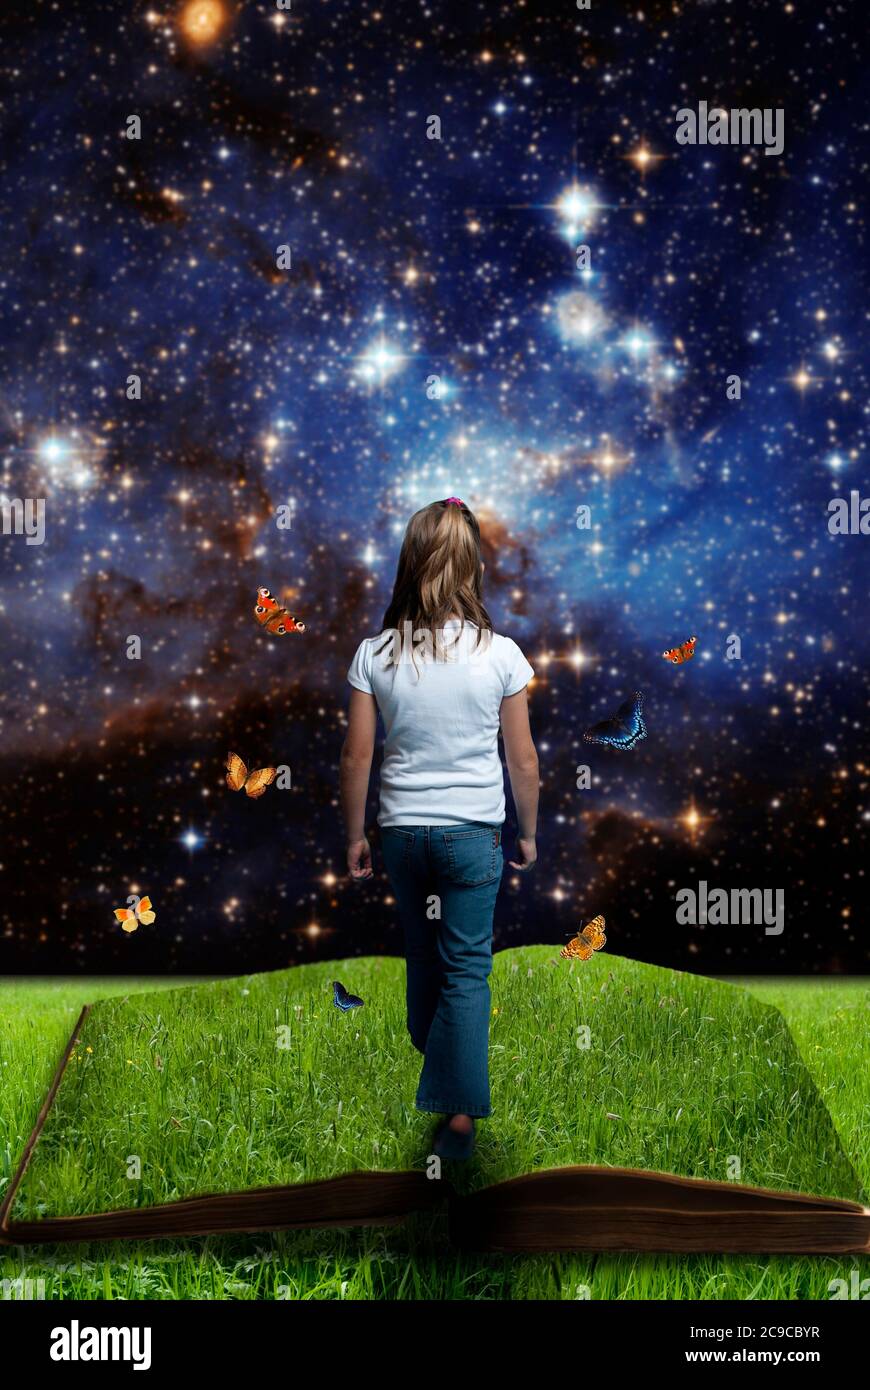 fille en chemise blanche marchant sur un livre vert ouvert avec l'univers et les étoiles en arrière-plan - les générations futures et concept écologique Banque D'Images